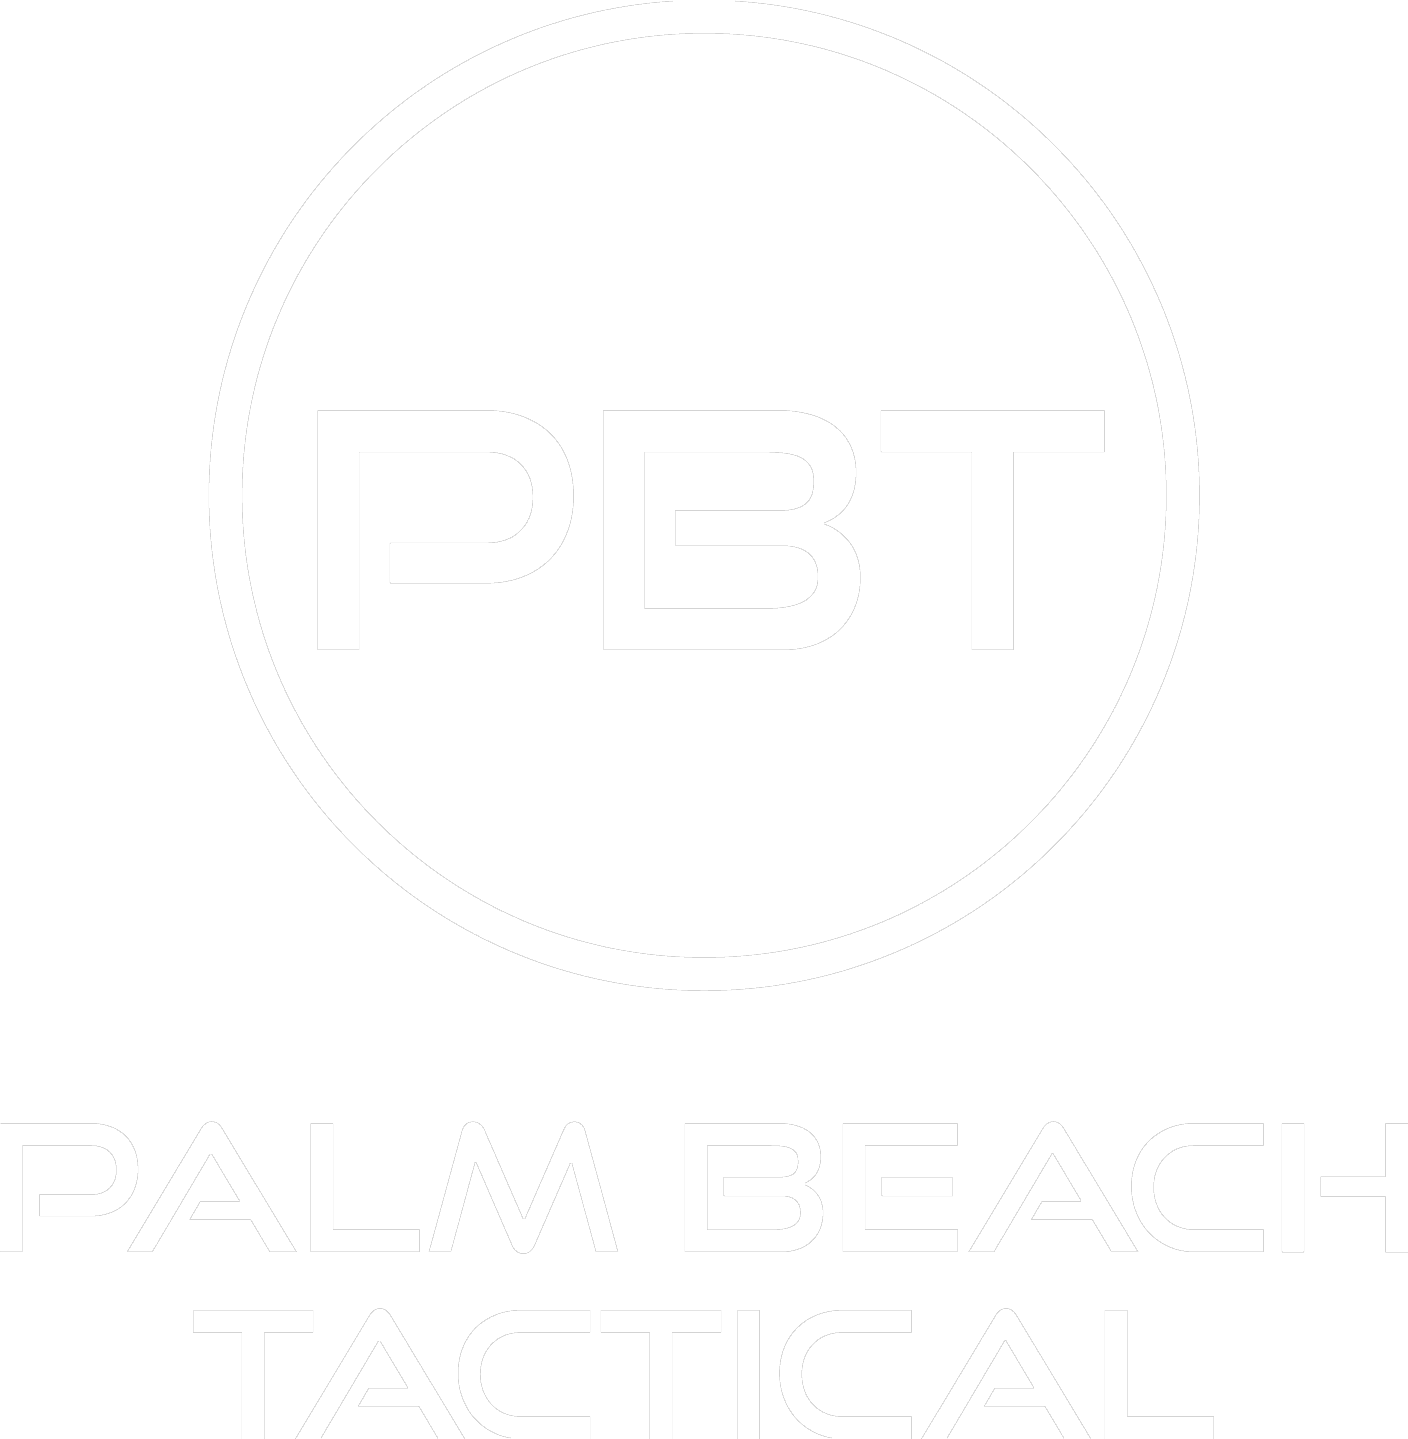 PALM BEACH TACTICAL